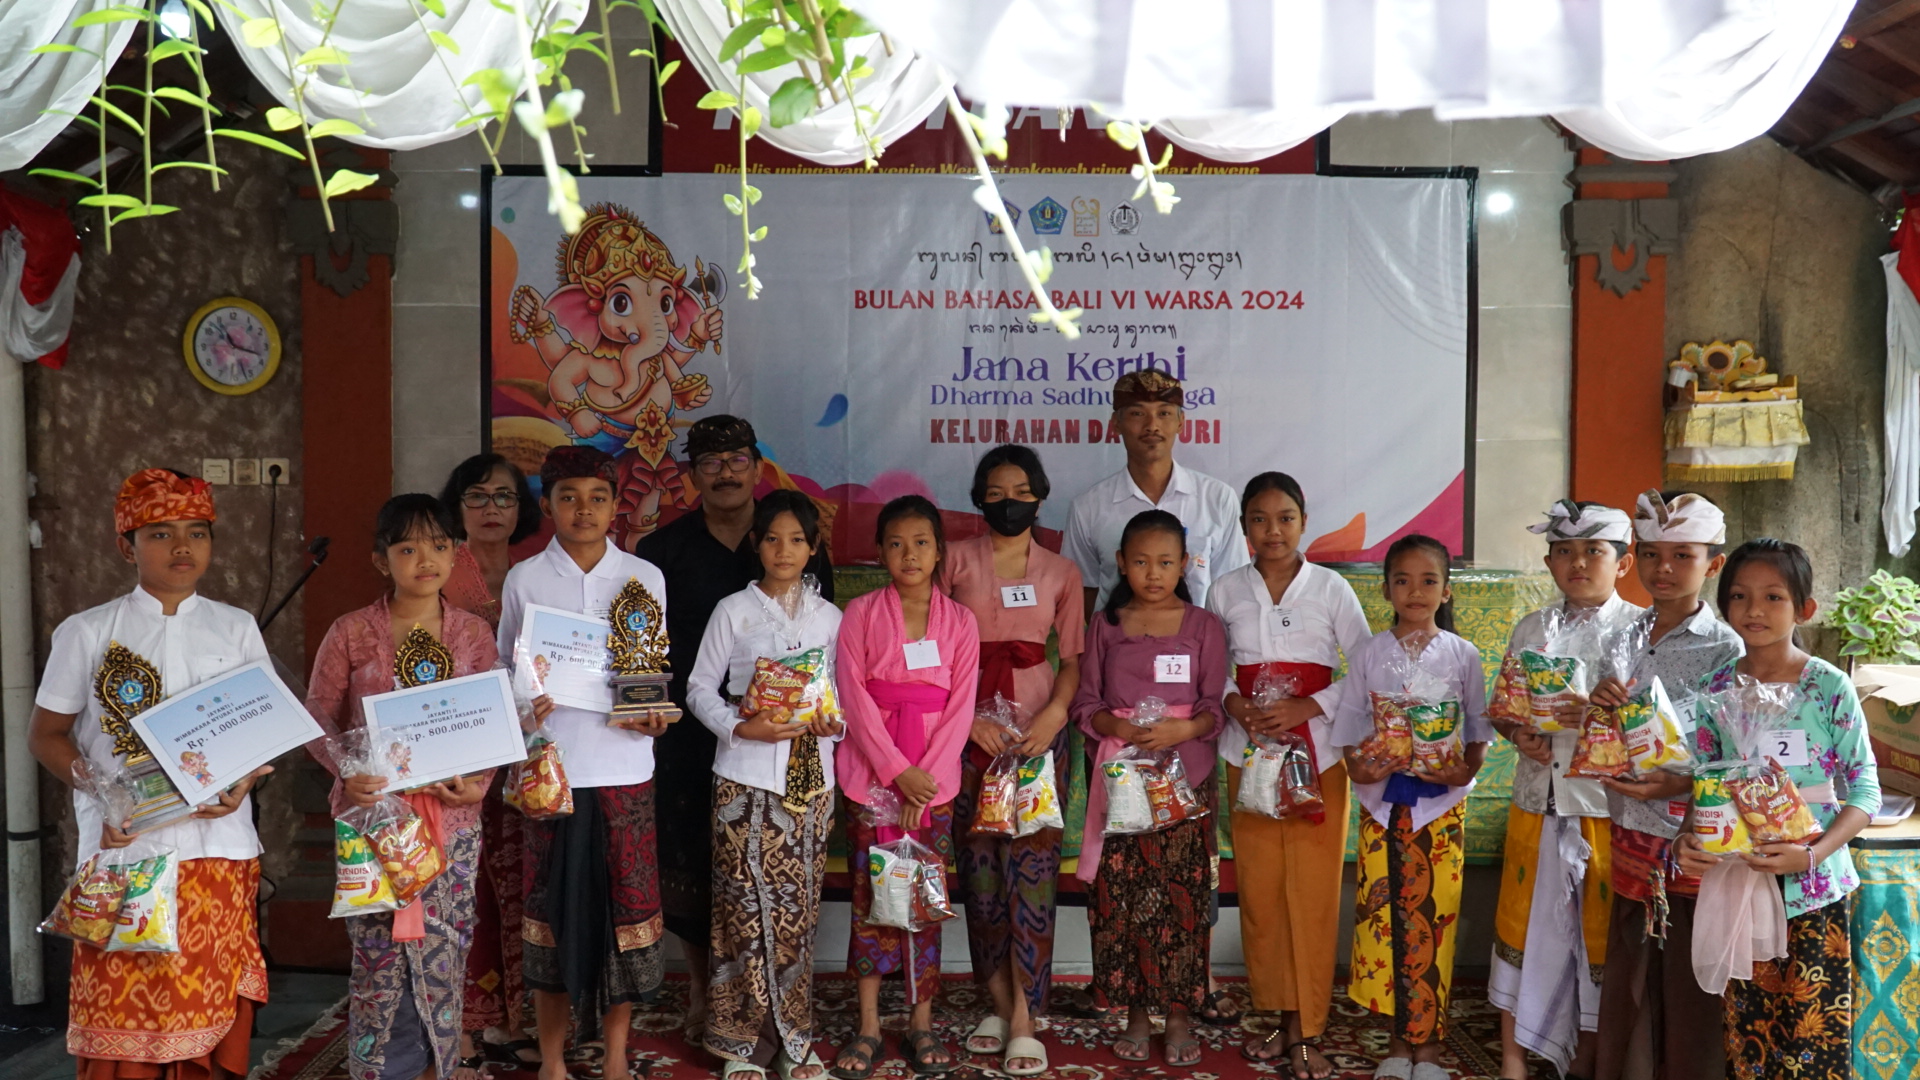 Pelaksanaan Lomba Bulan Bahasa Bali